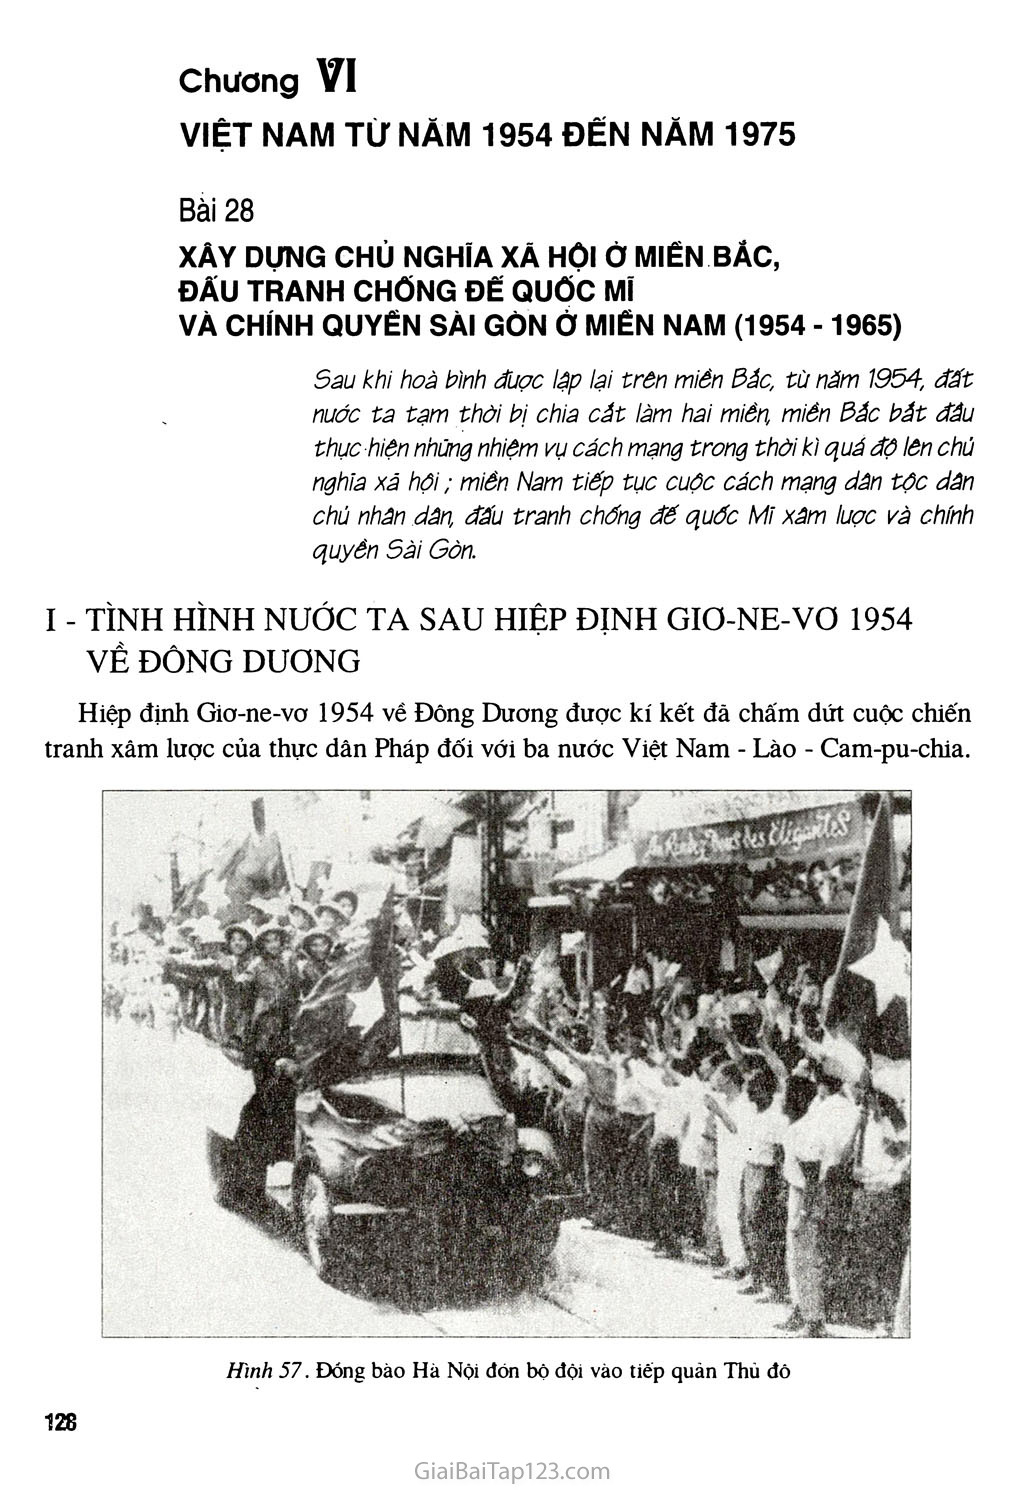 Bài 28 - Xây dựng chủ nghĩa xã hội ở miền Bắc, đấu tranh chống đế quốc Mĩ và chính quyền Sài Gòn ở miền Nam (1954 - 1965) trang 1